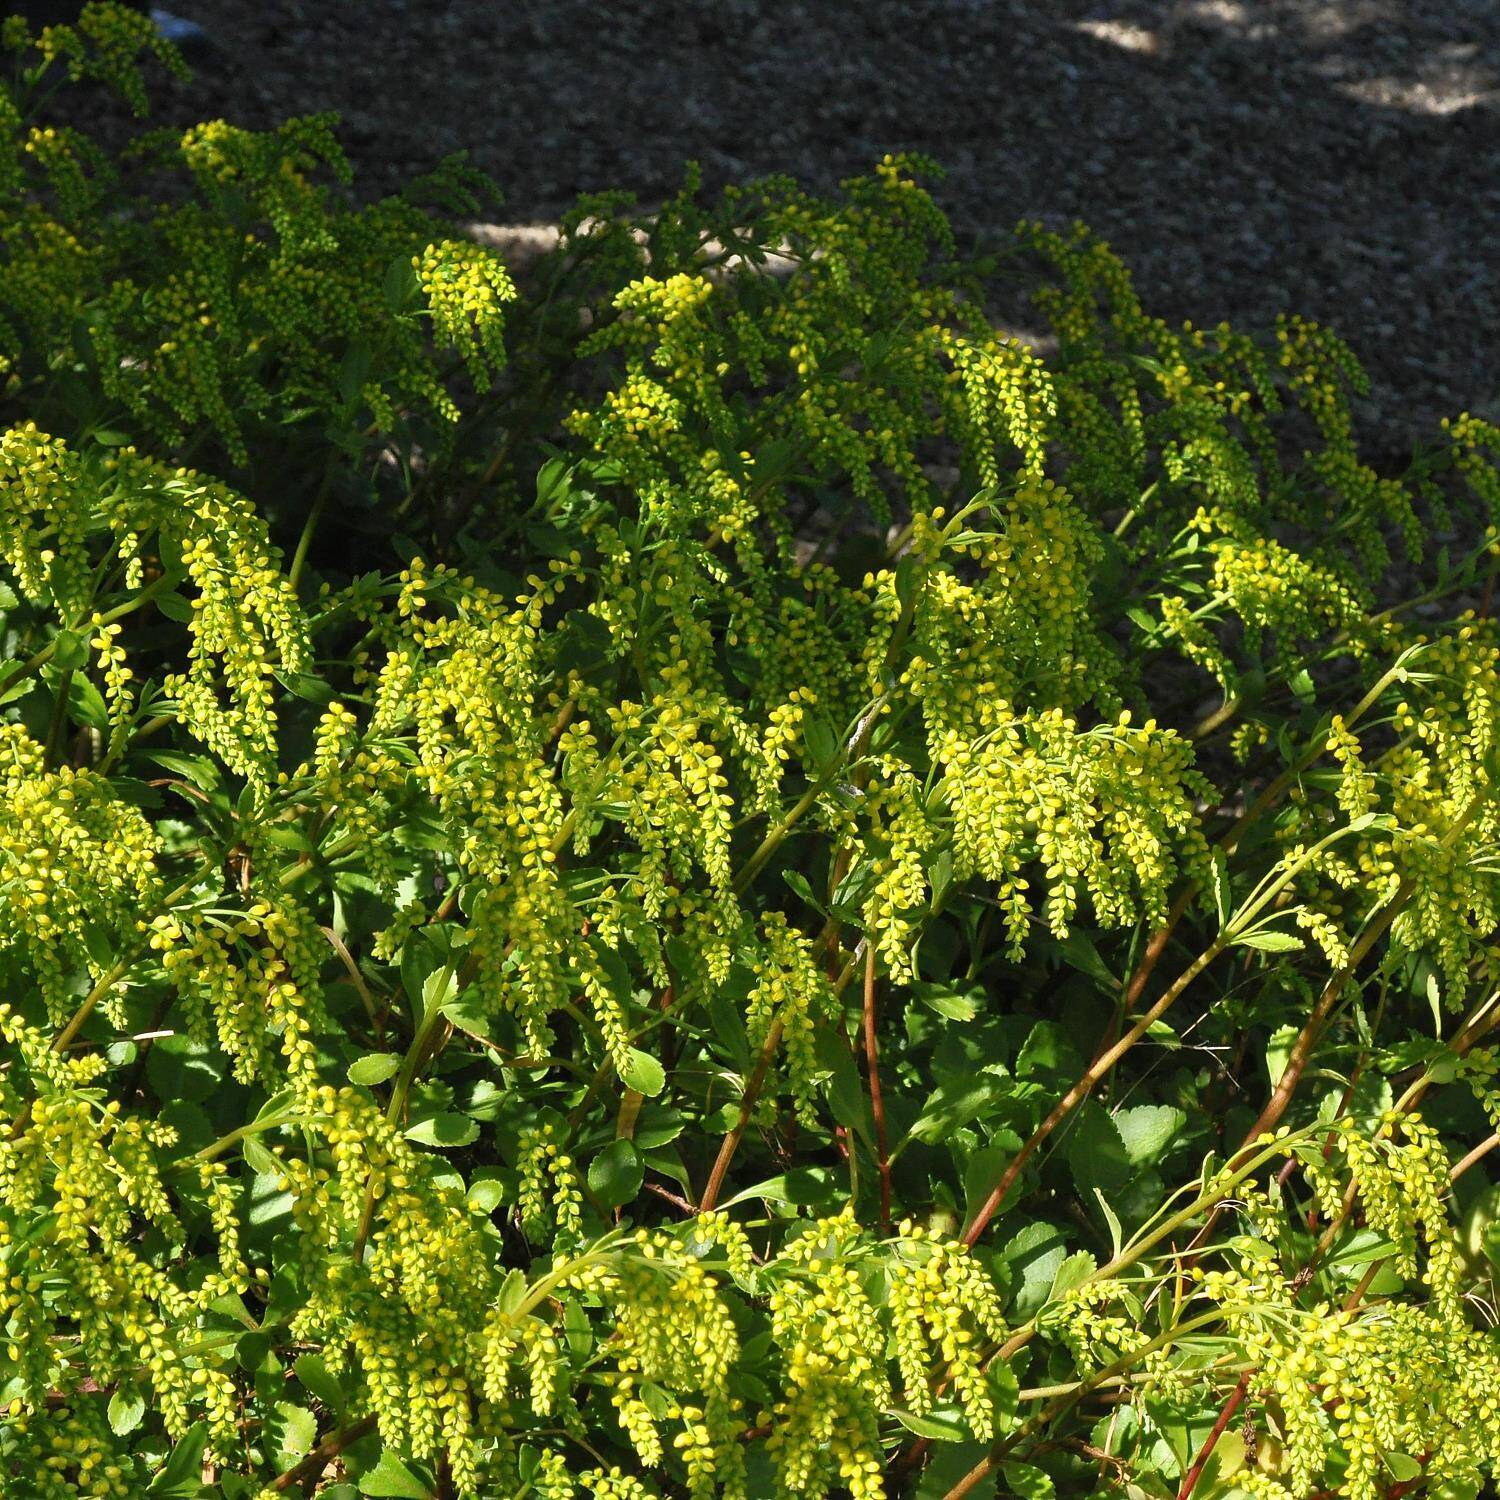  Goldtröpfchen - Chiastophyllum oppositifolium